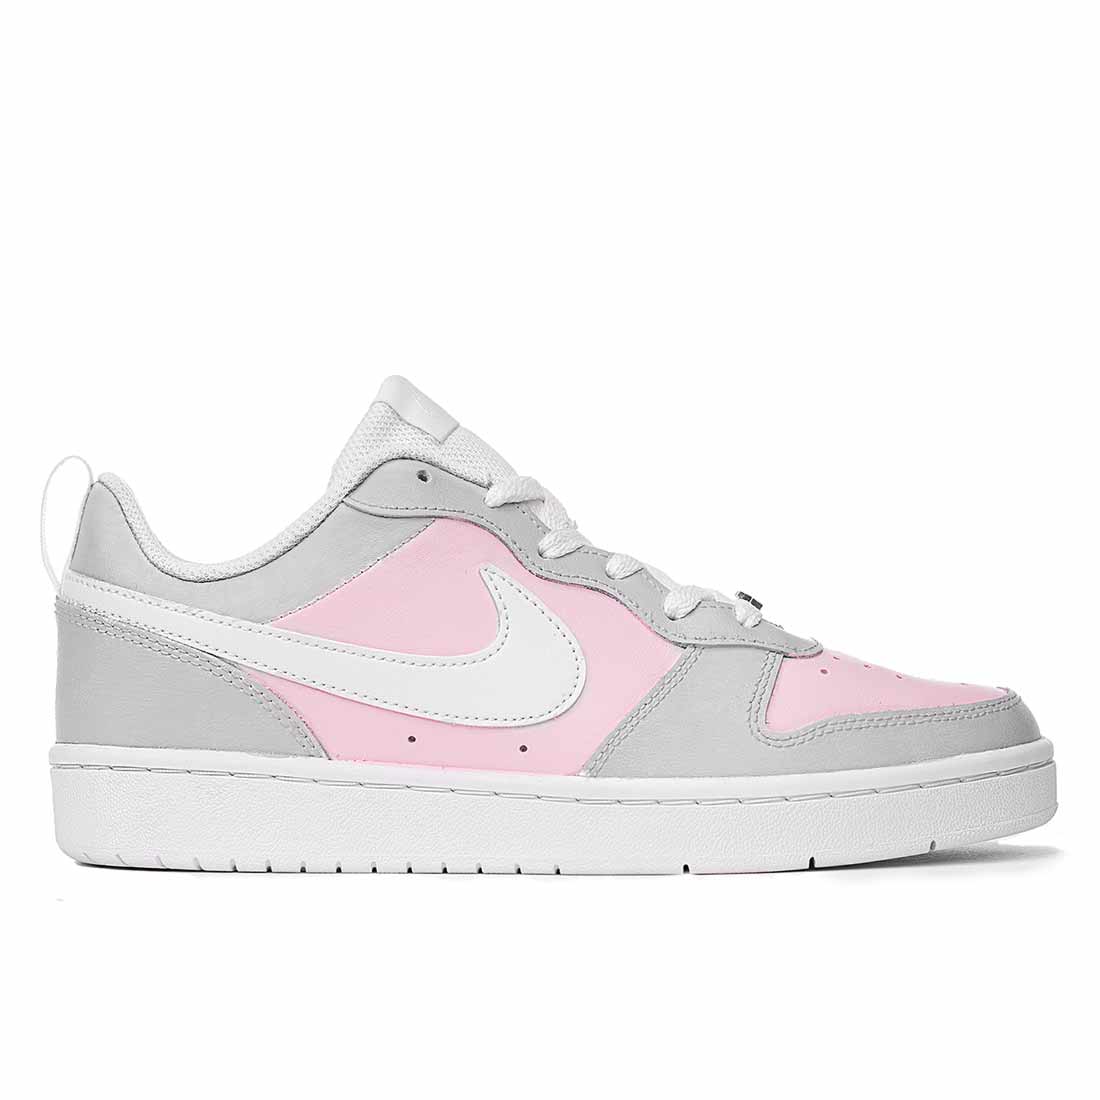 Nike court colore rosa e grigio pastello